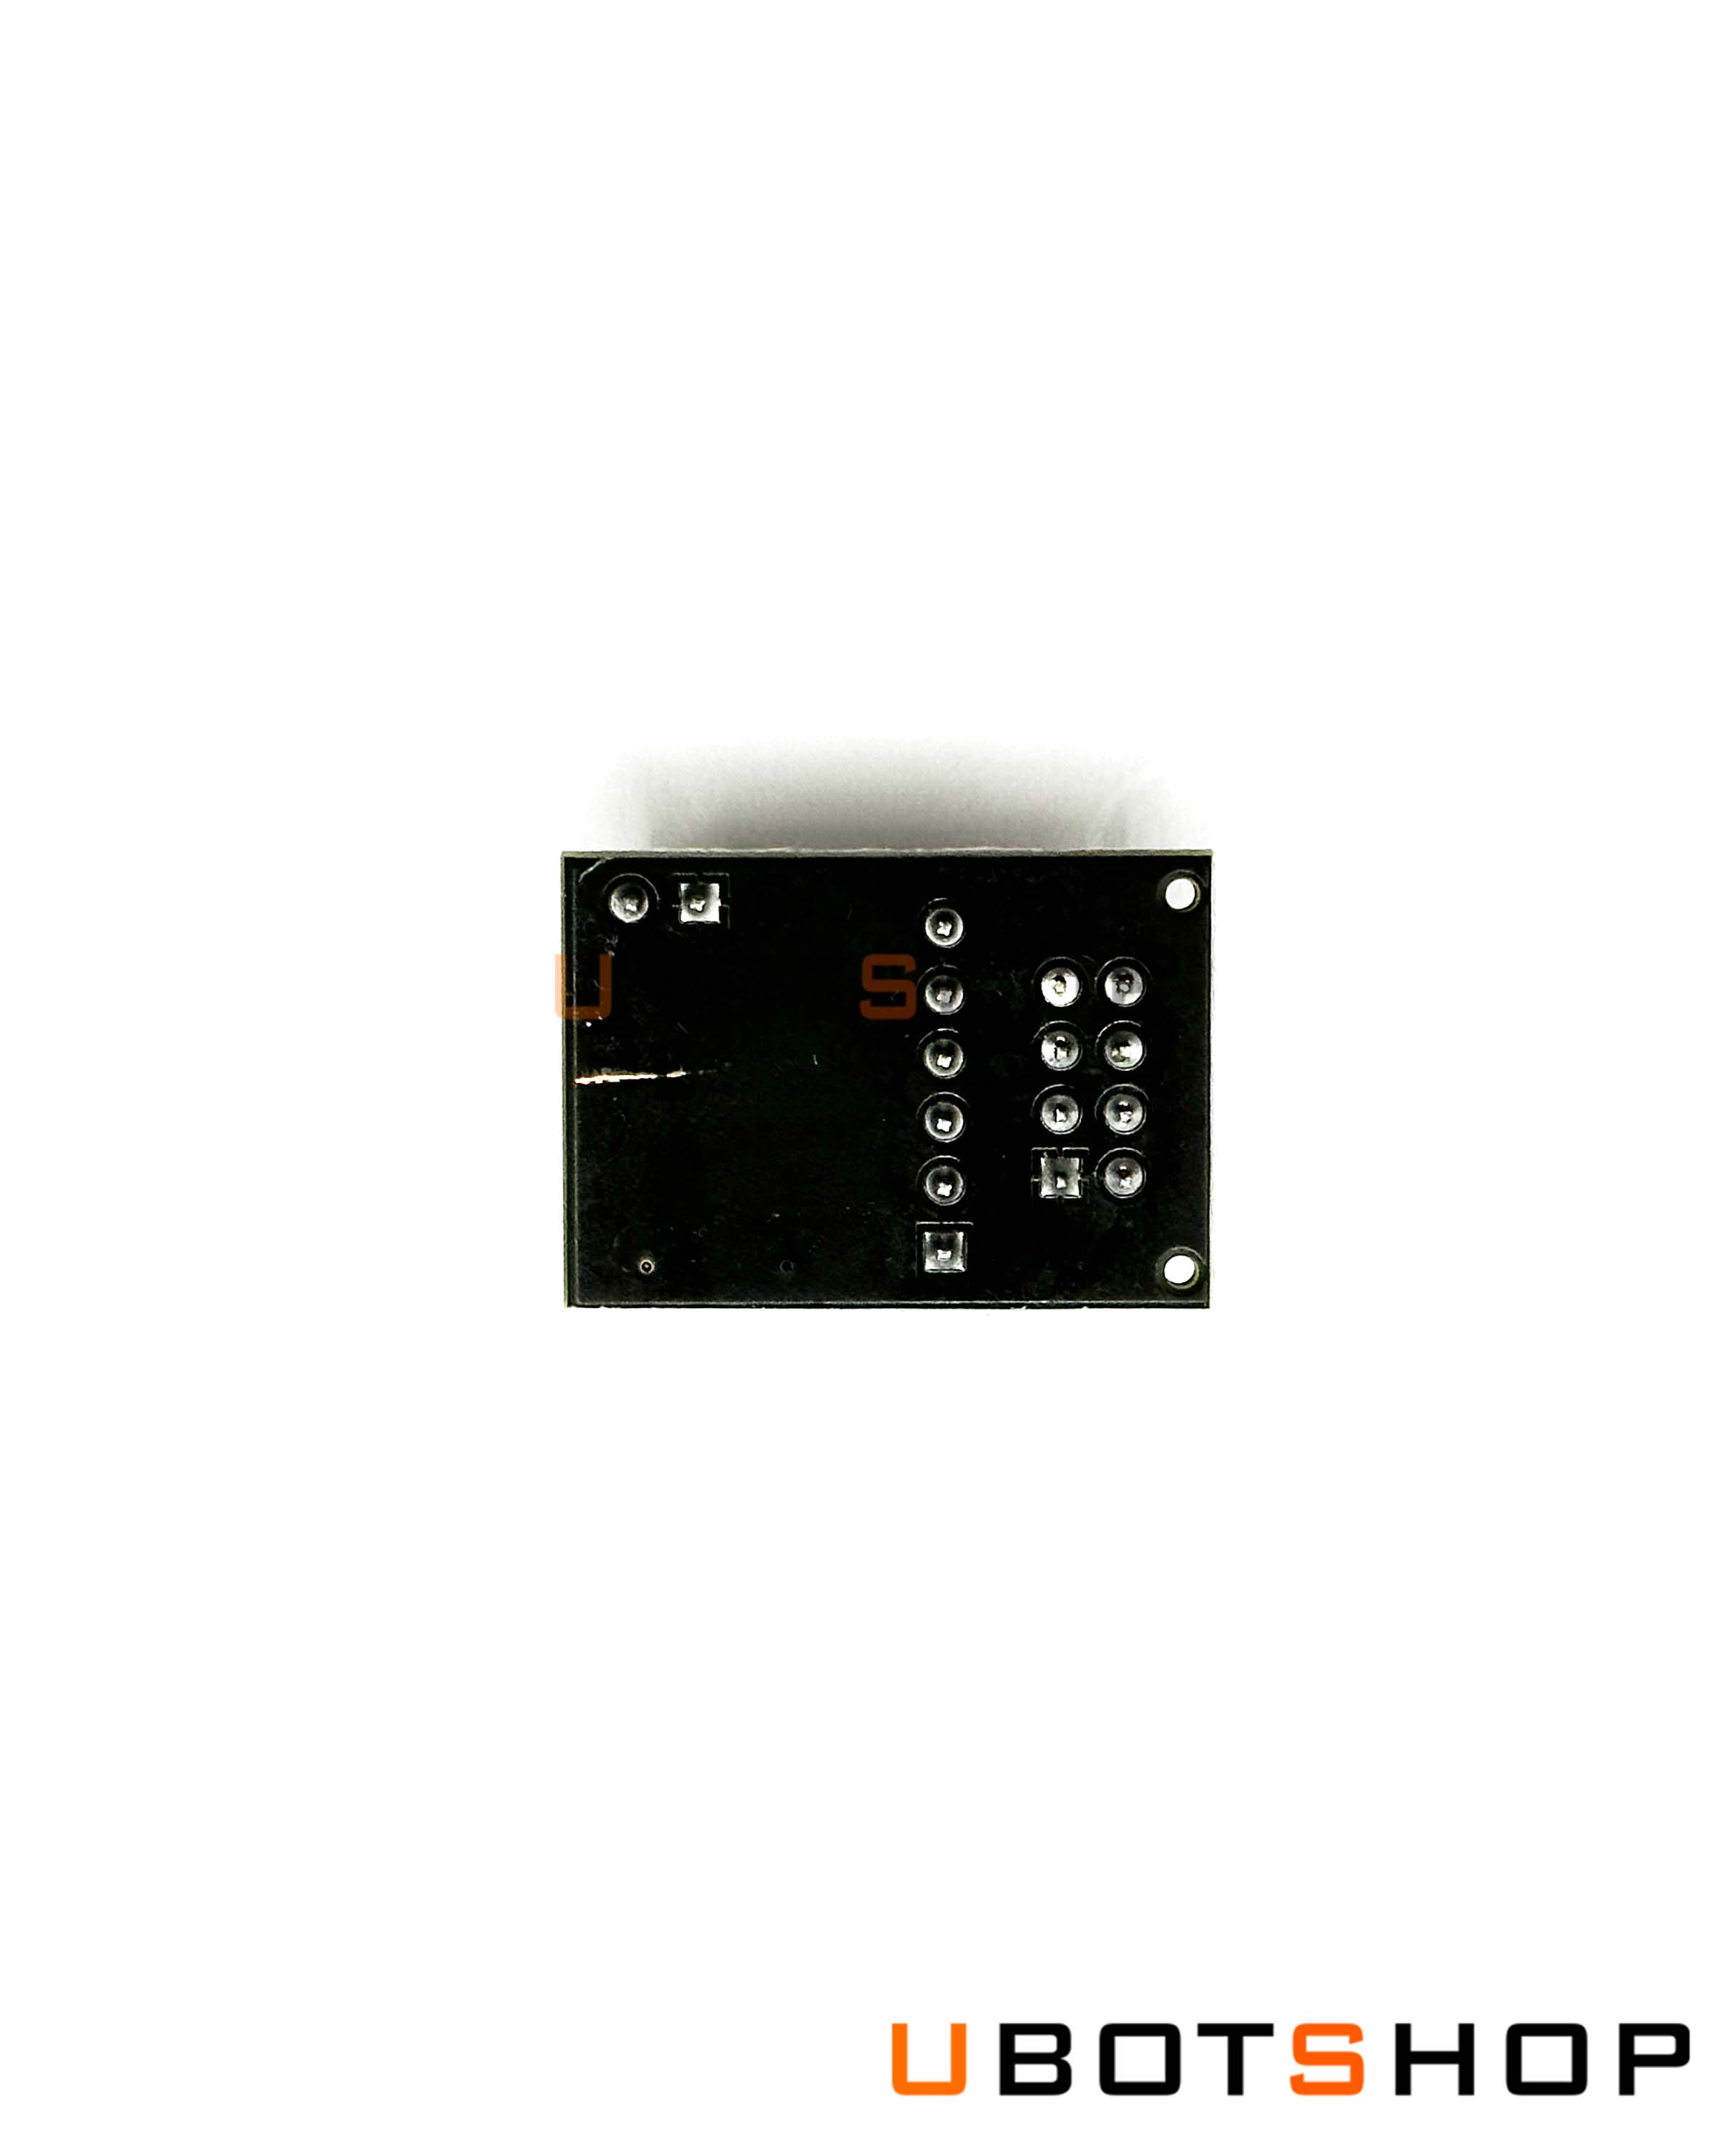 NRF24L01 Wireless Transceiver Socket Adapter Board 8Pin 3.3v Regulator (SM0047)